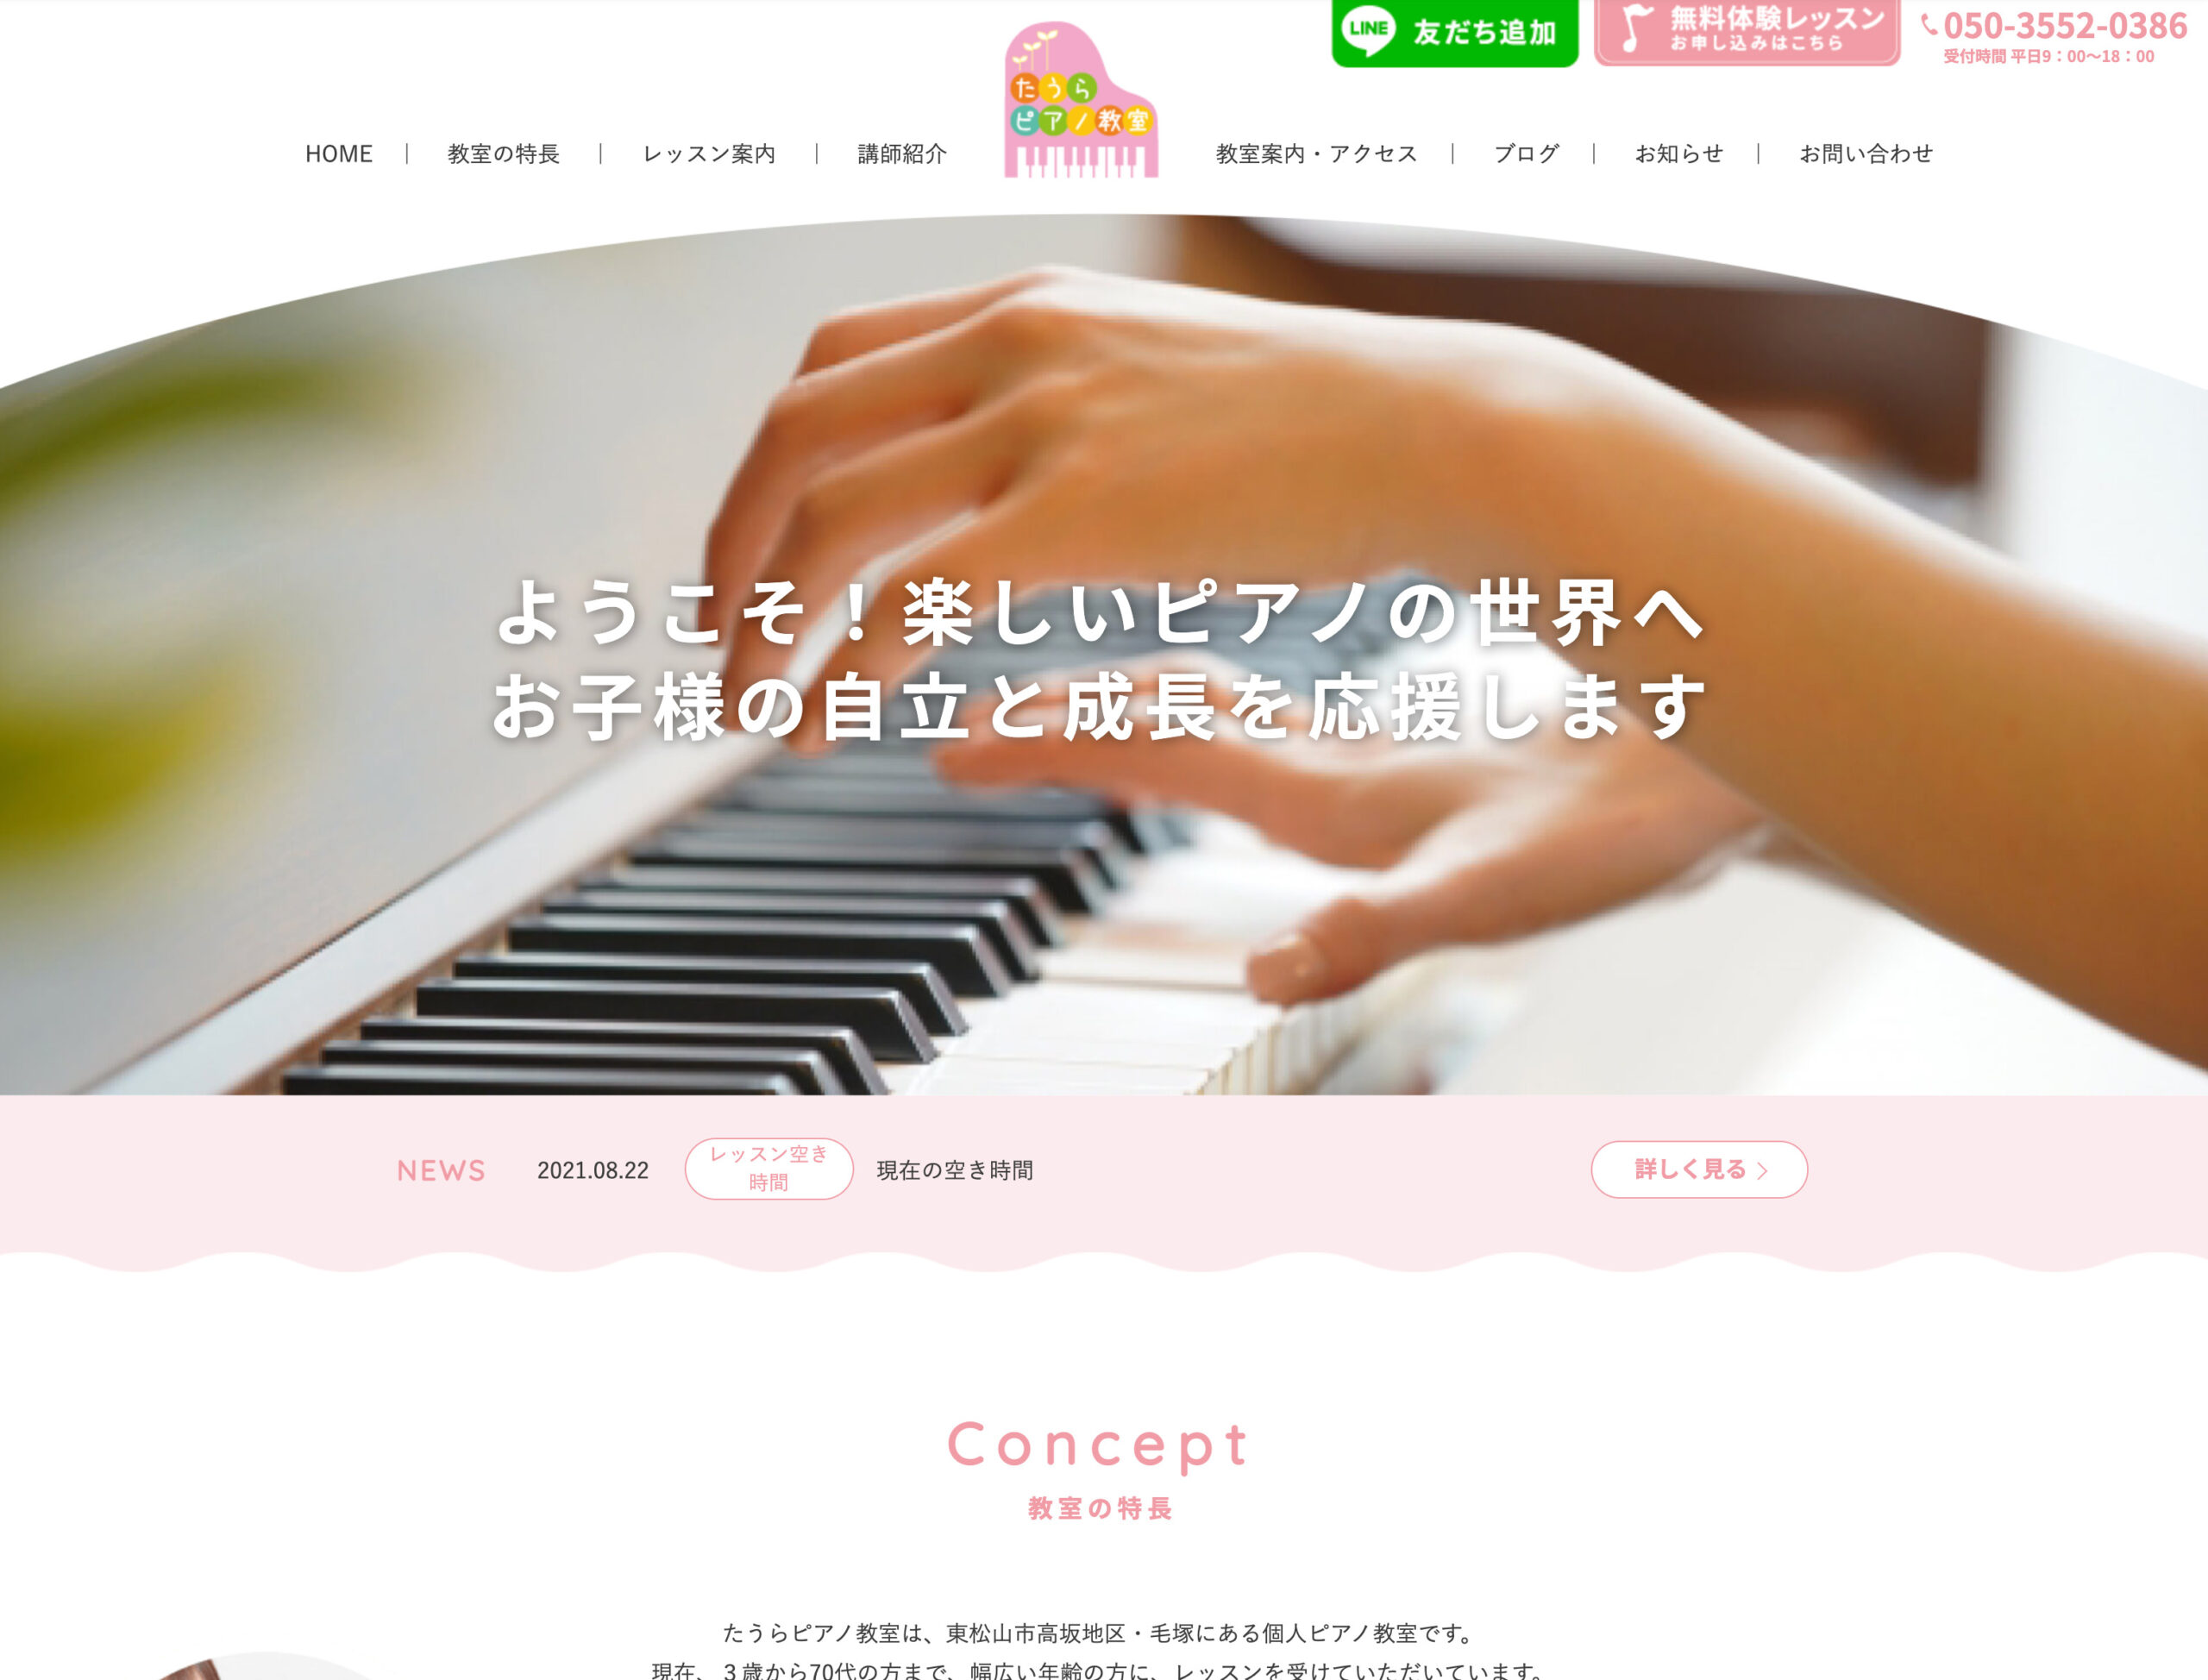 埼玉のピアノ教室 たうらピアノ教室様 ホームページ制作ならカズミア